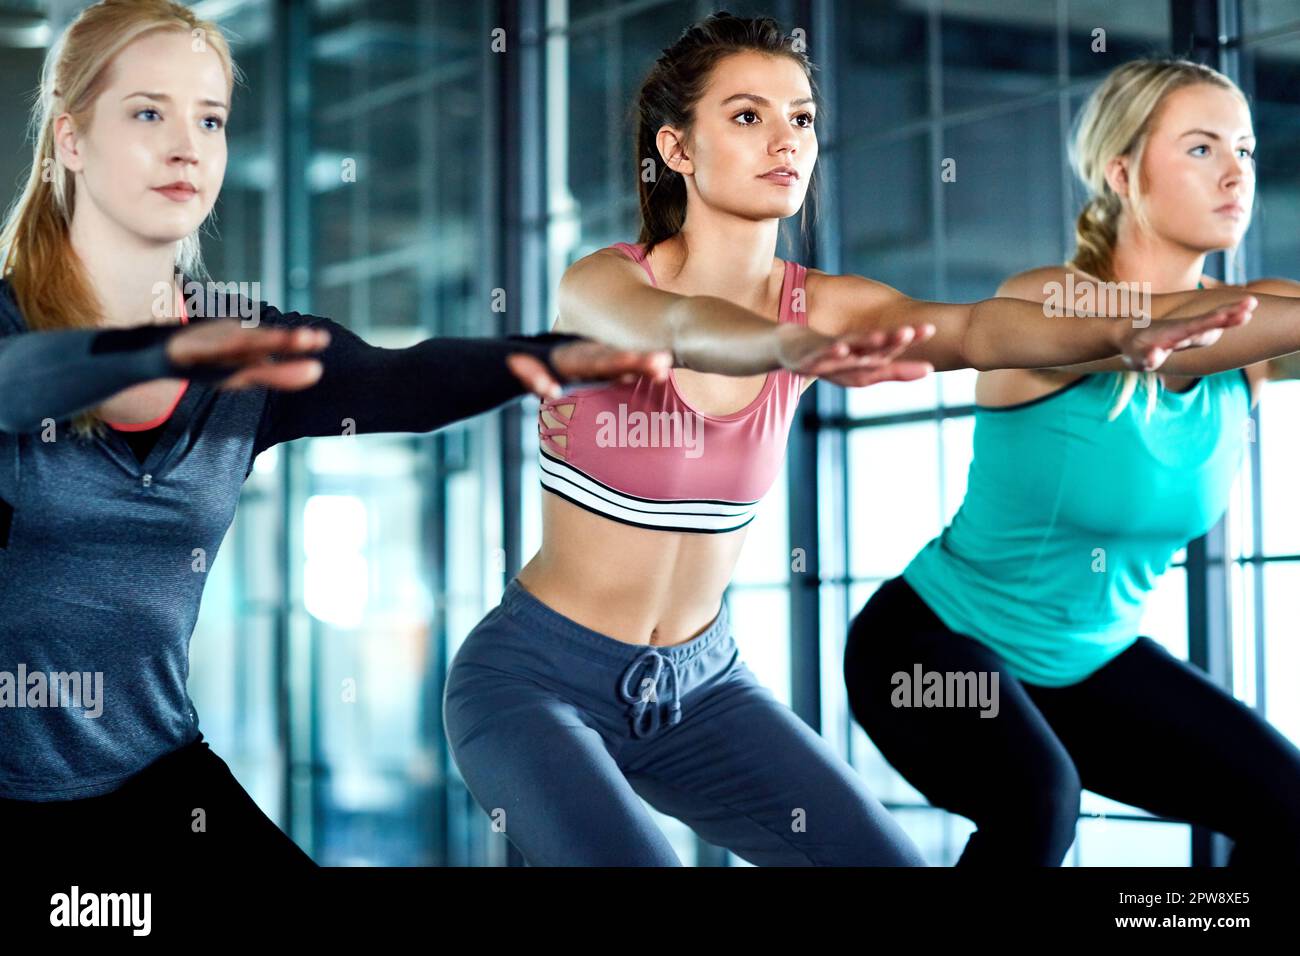 Sie werden zusammen fitter. Drei attraktive junge Frauen trainieren zusammen im Fitnessstudio. Stockfoto